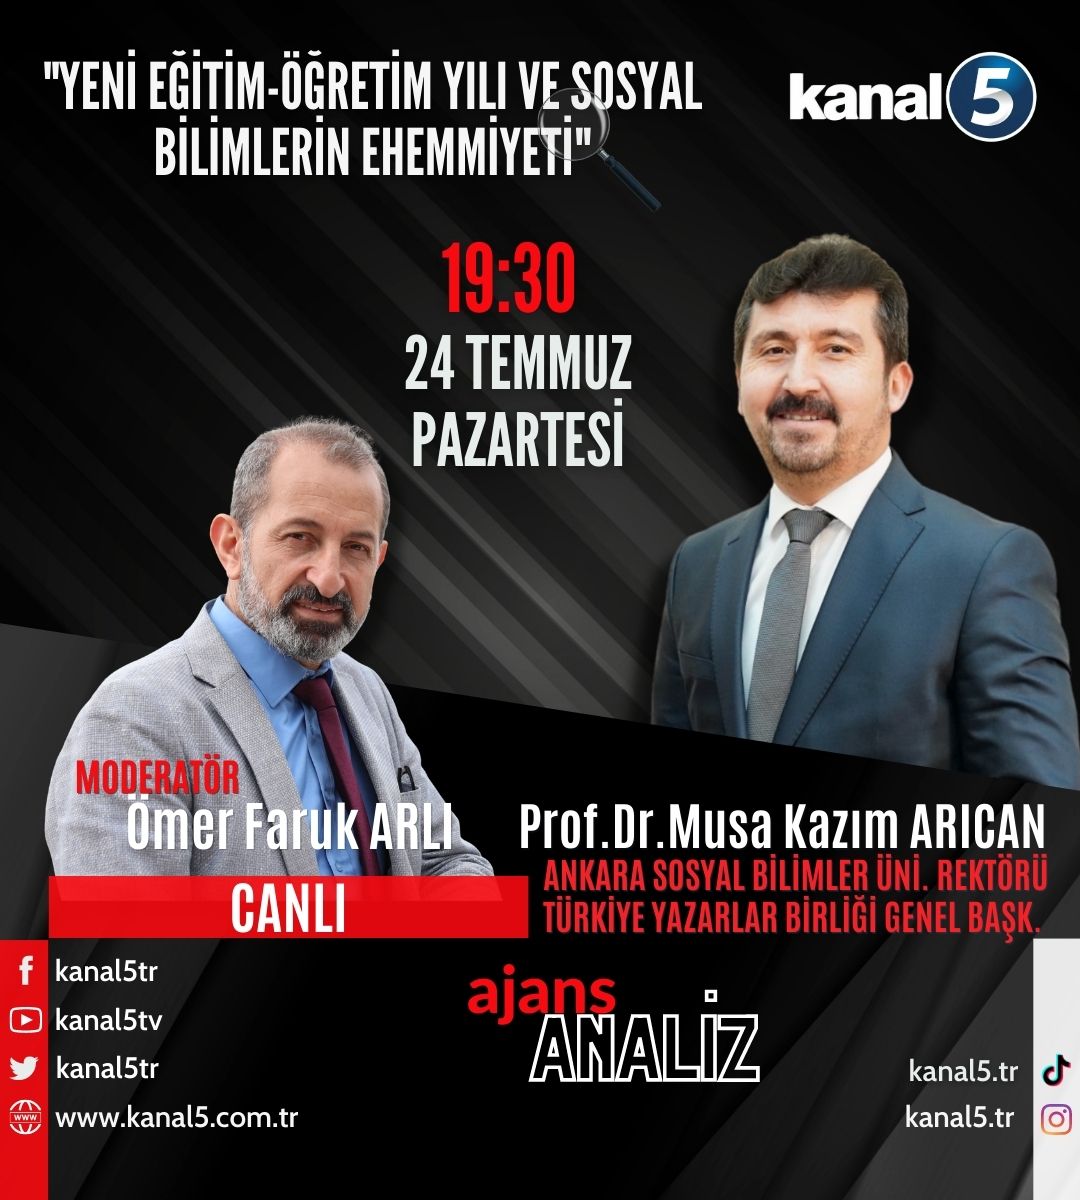 Genel Başkan Arıcan Kanal 5’in canlı yayınında konuşacak